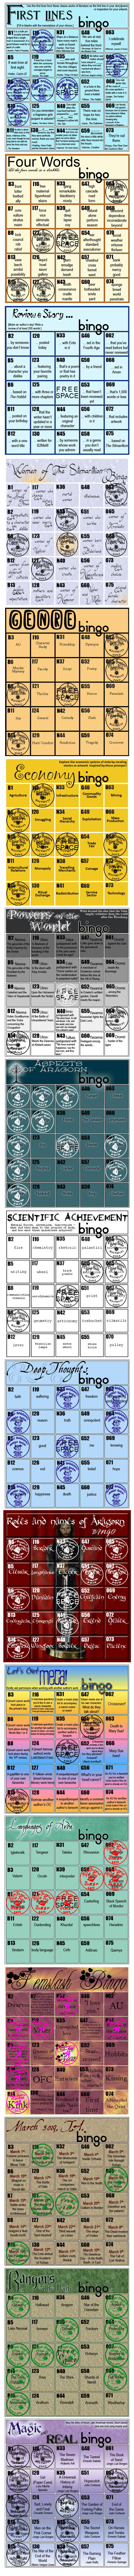 Dwimordene's Bingo Cards